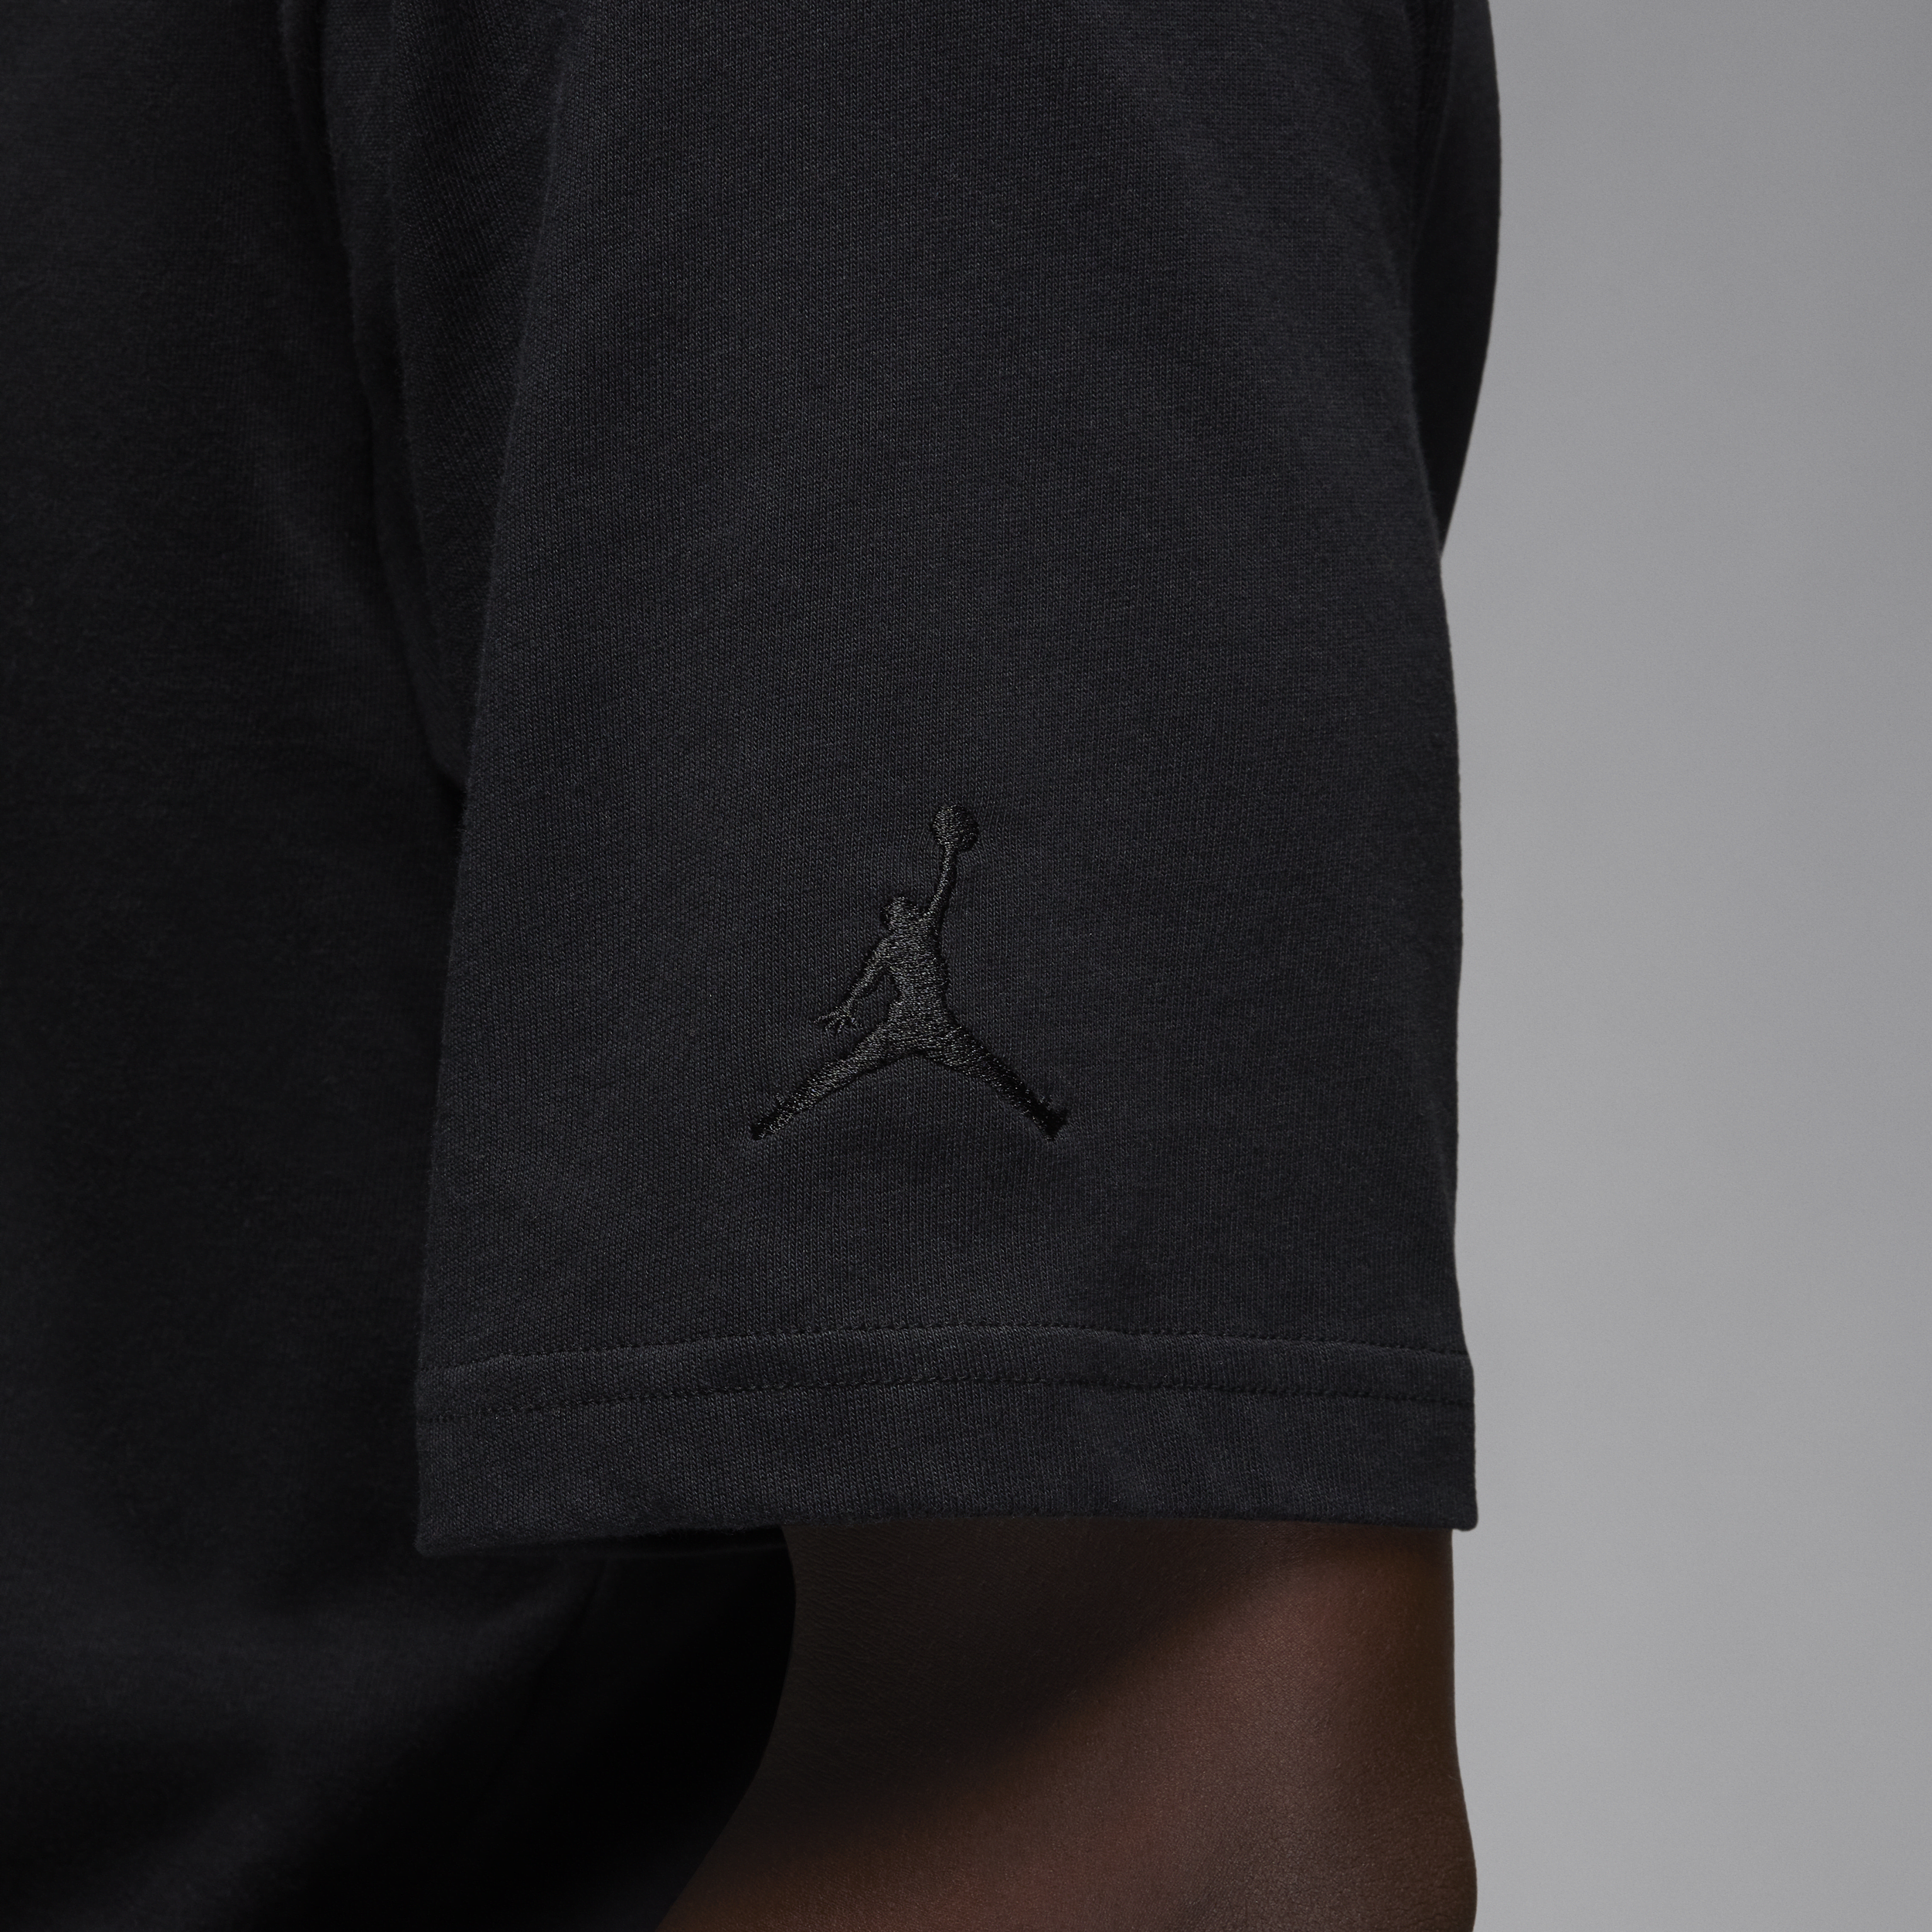 Jordan Brand T-shirt voor heren Zwart